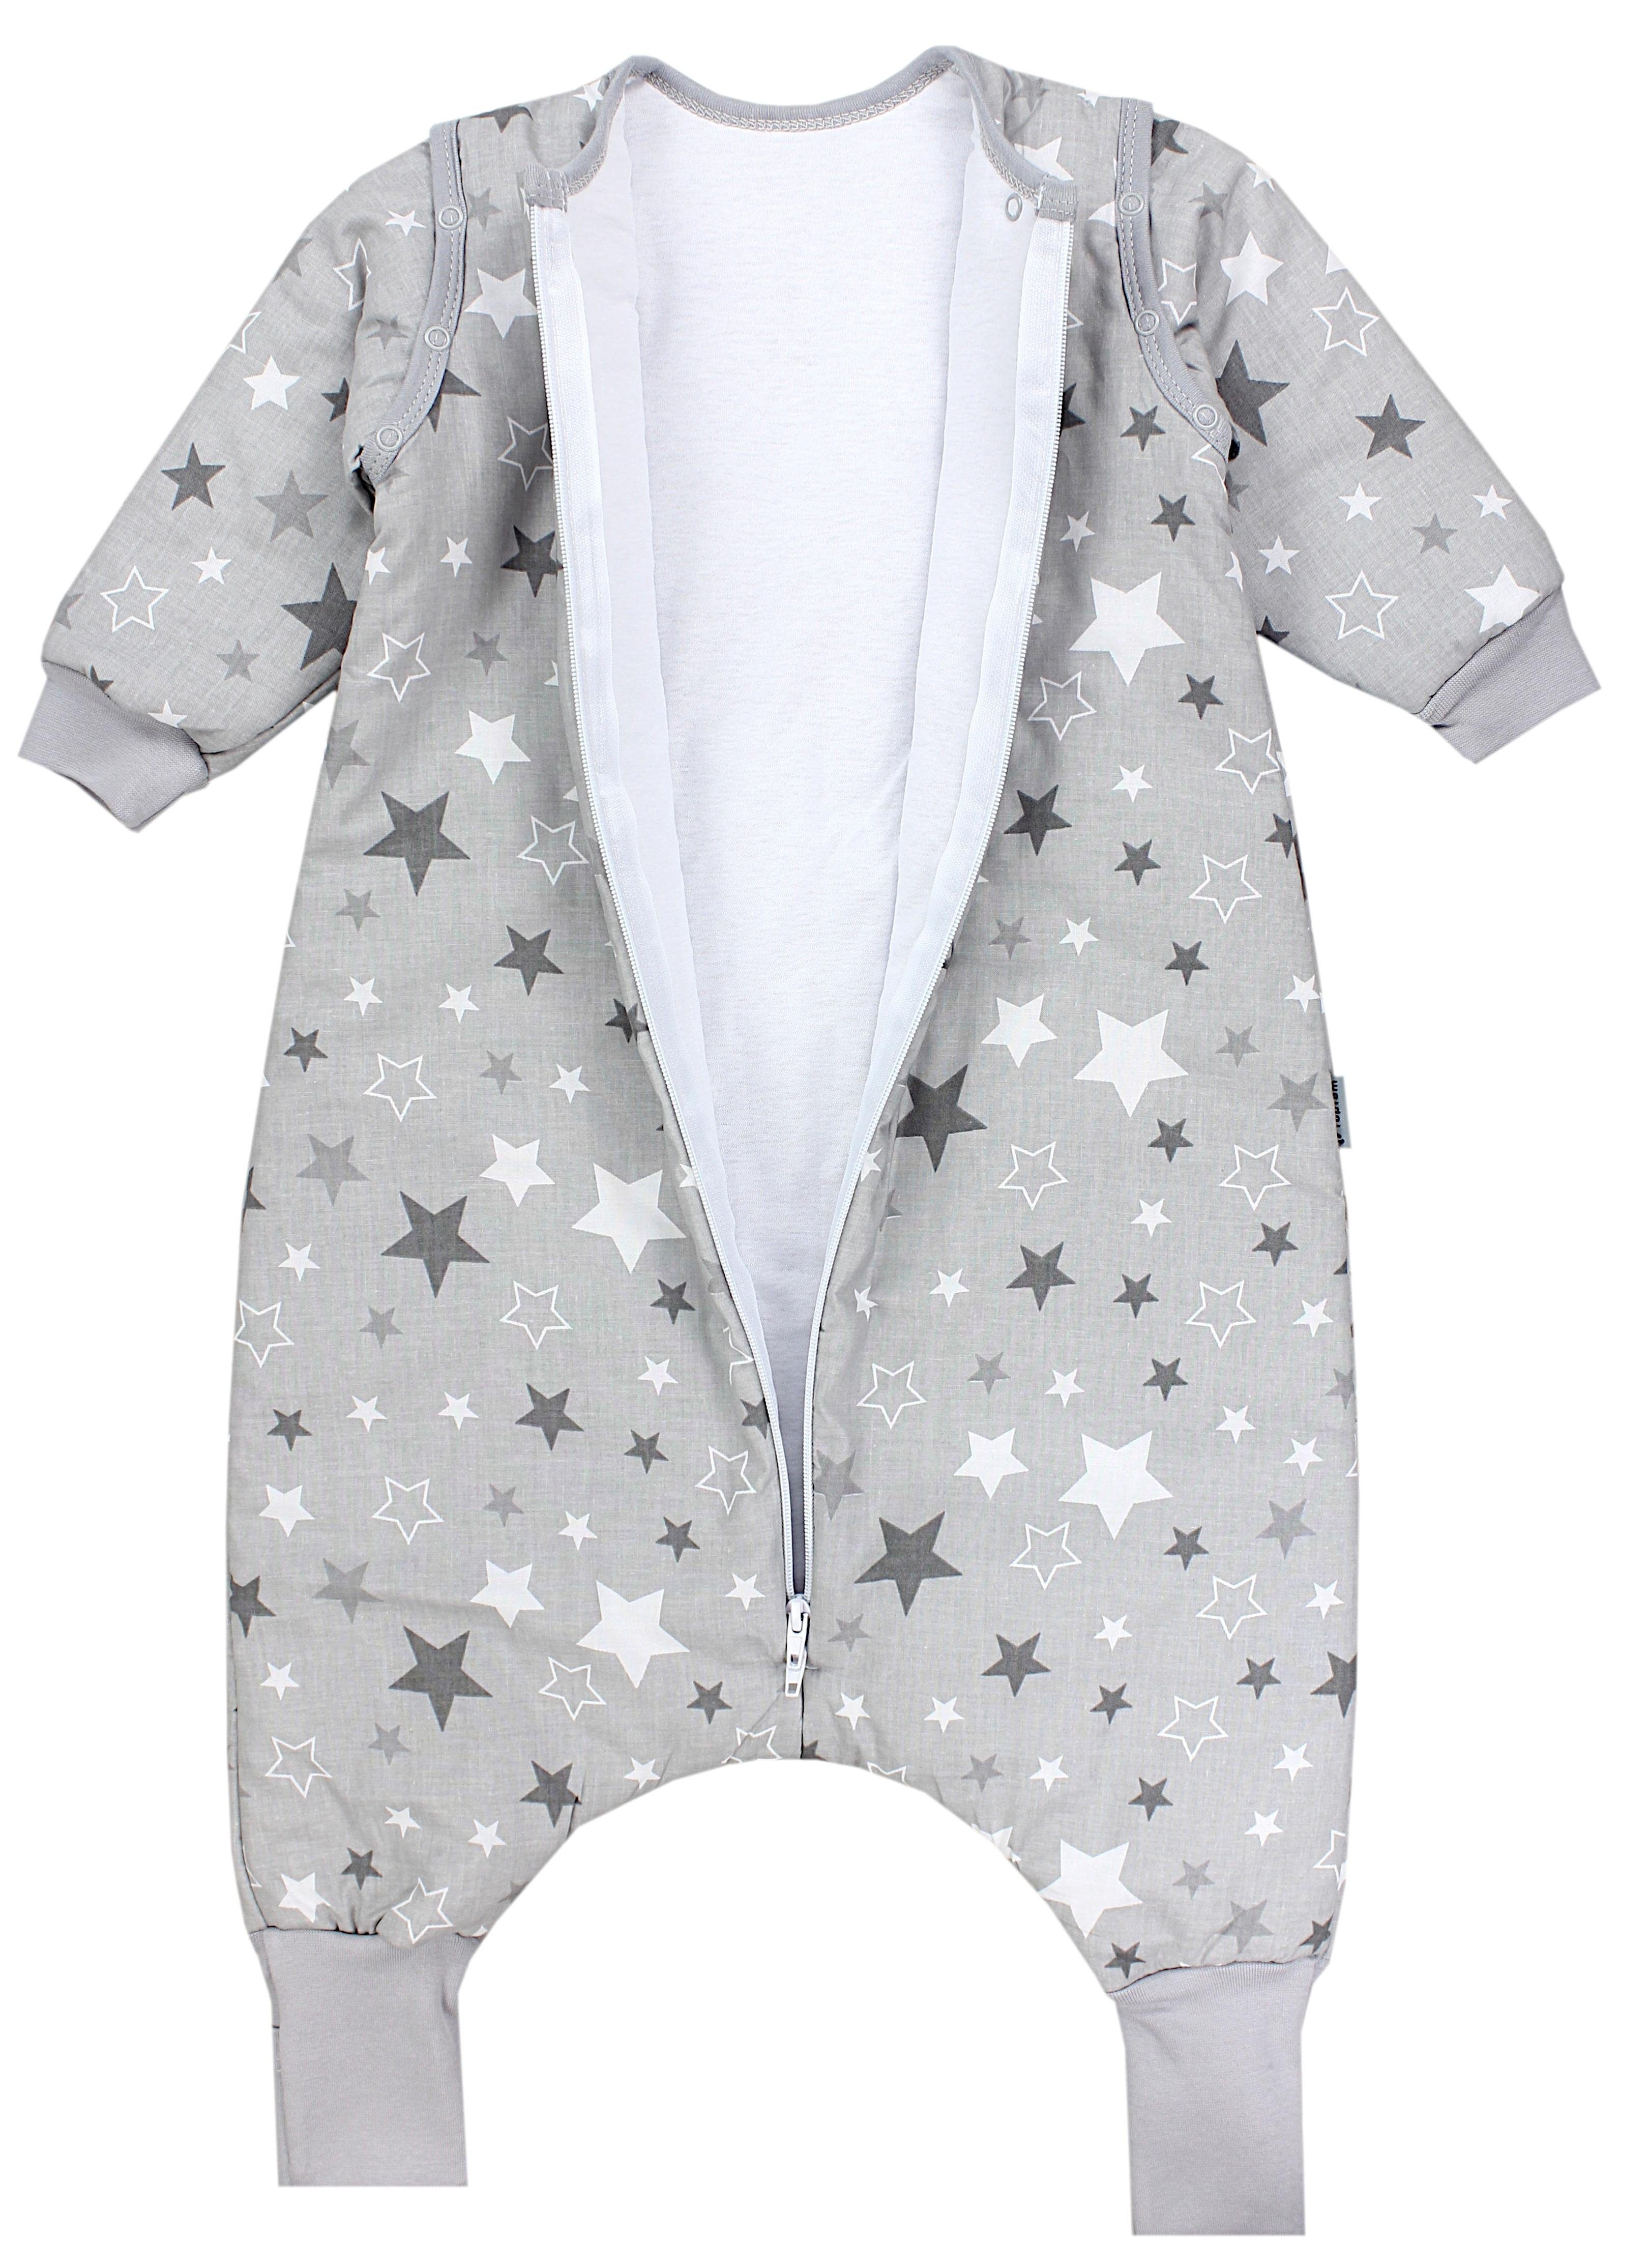 Sterne TupTam Winterschlafsack Beinen und / Armen Babyschlafsack Unisex mit Grau zertifiziert, Weiß OEKO-TEX